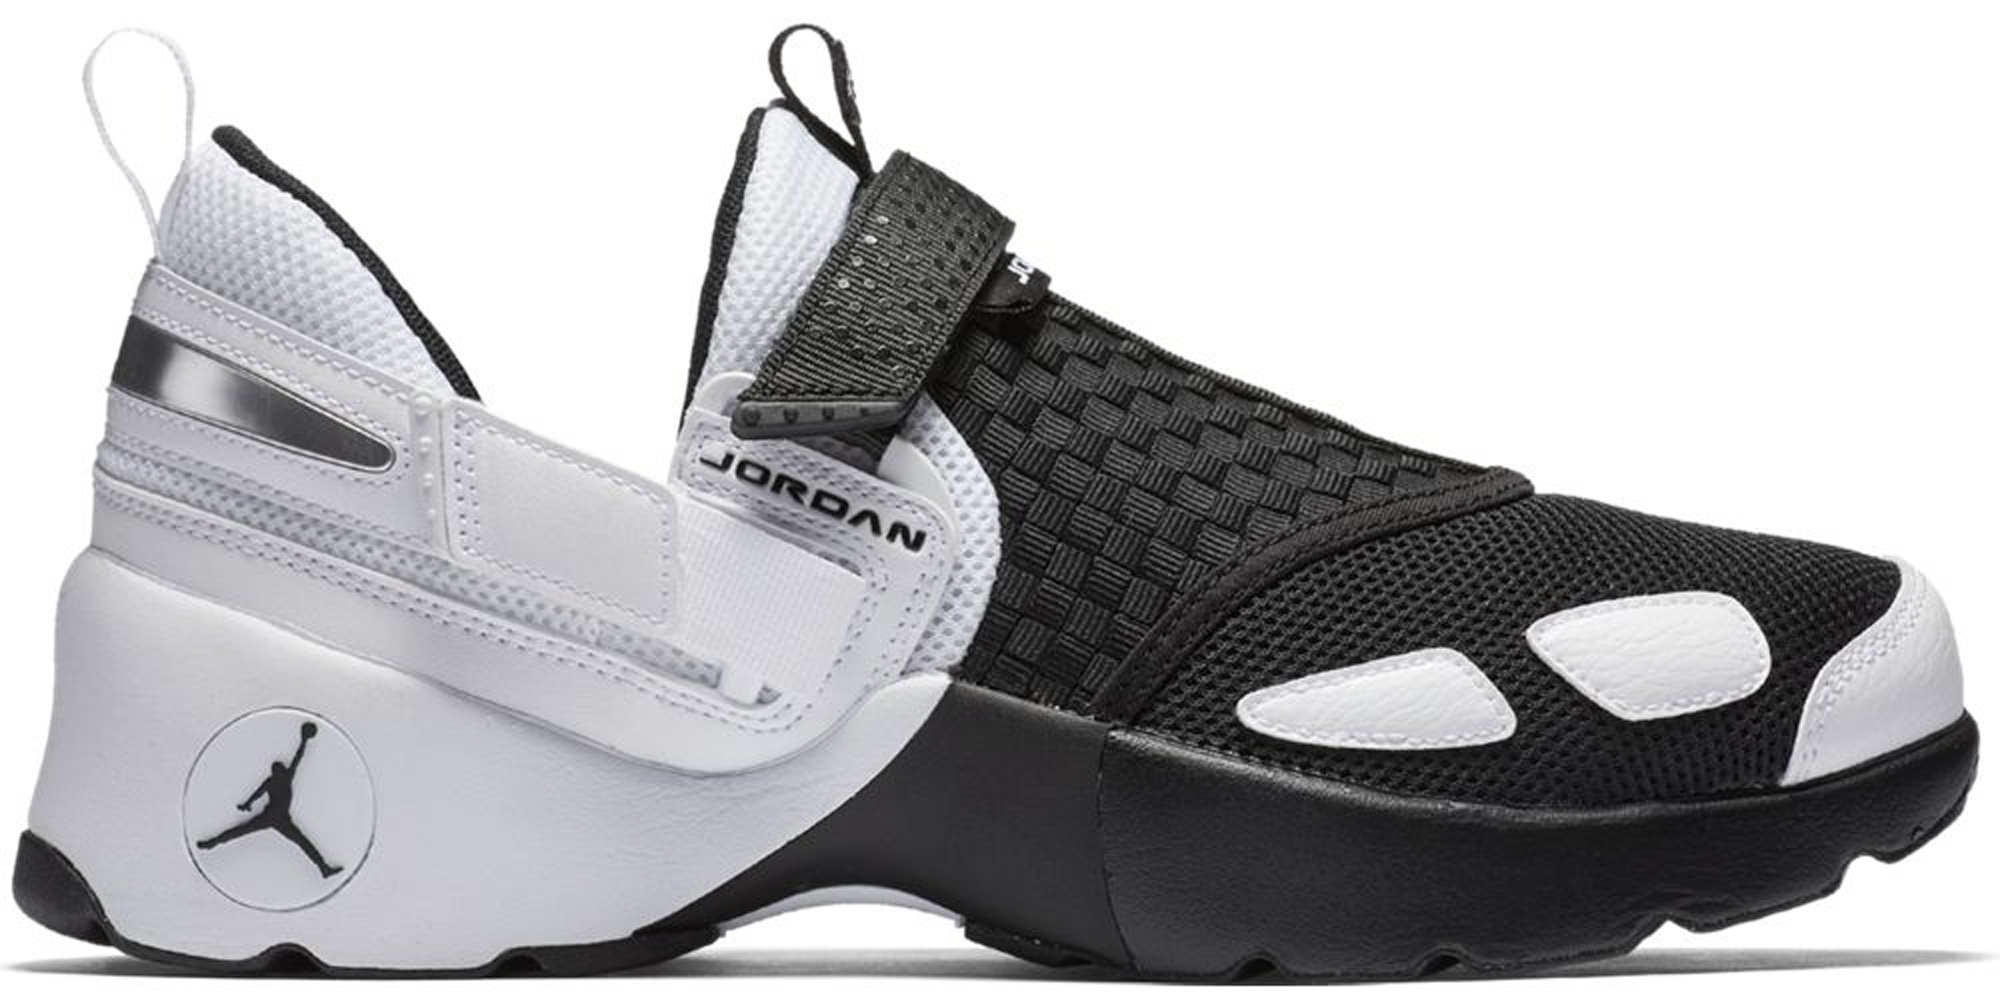 Jordan Trunner LX Black White - 897992-010